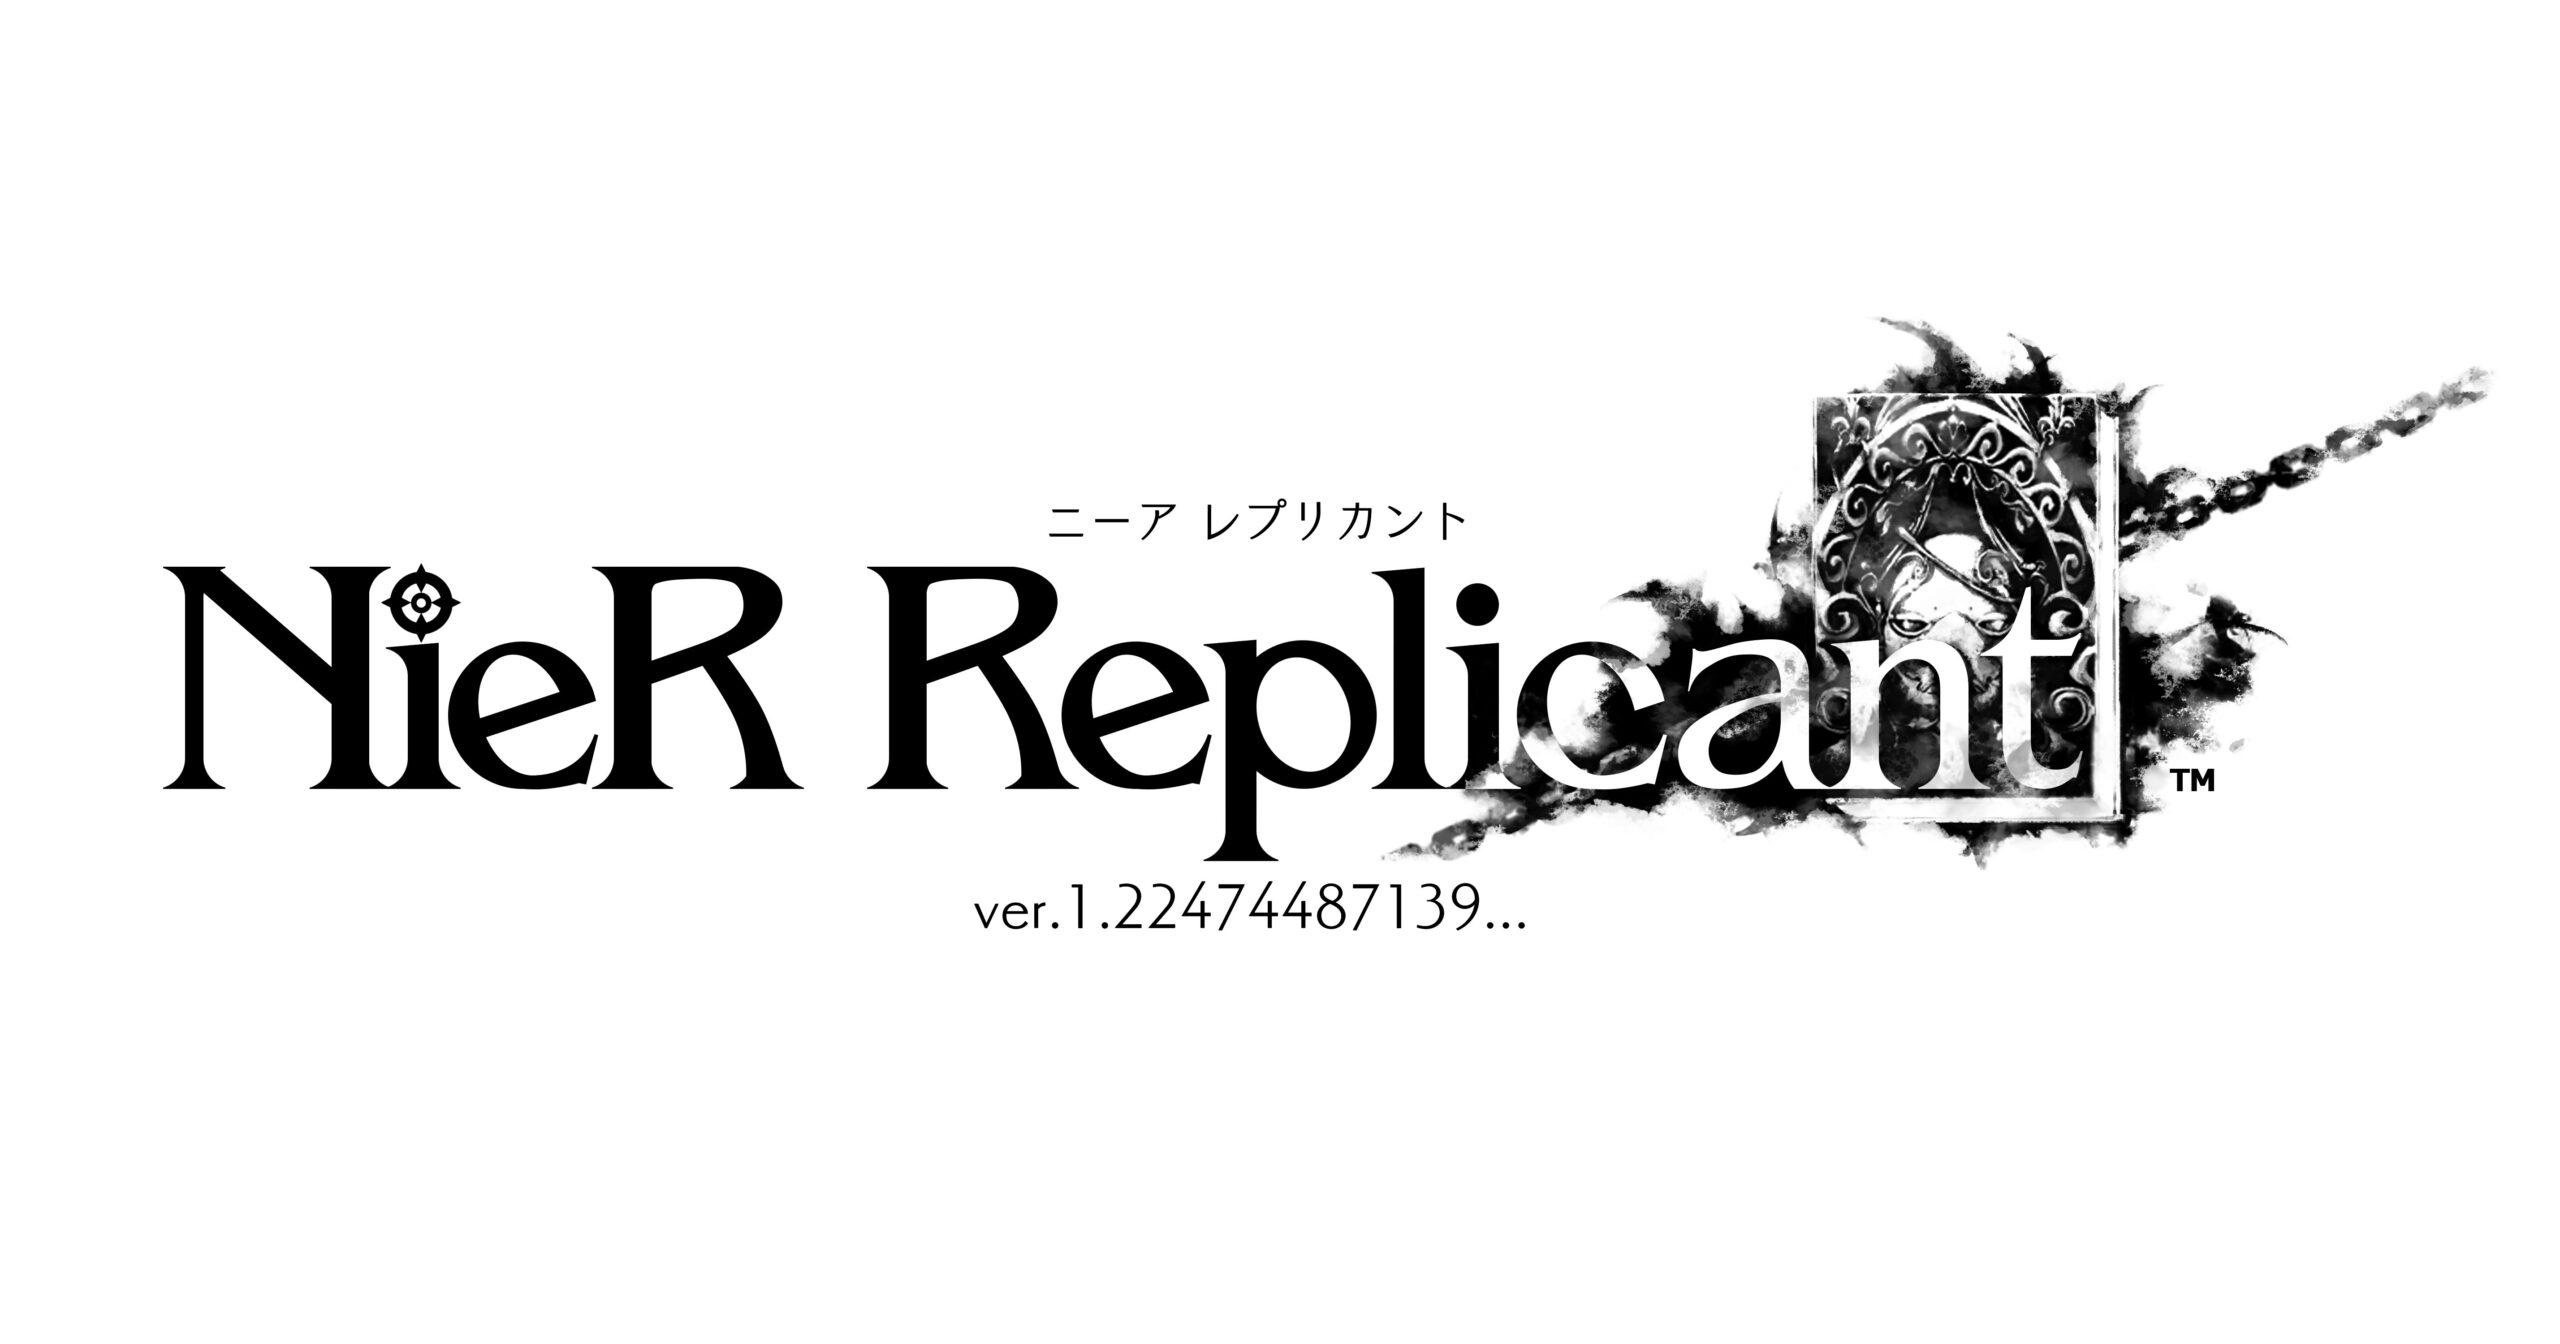 NieR Replicant ver.1.22474487139 - Playstation 4 – Retro Raven